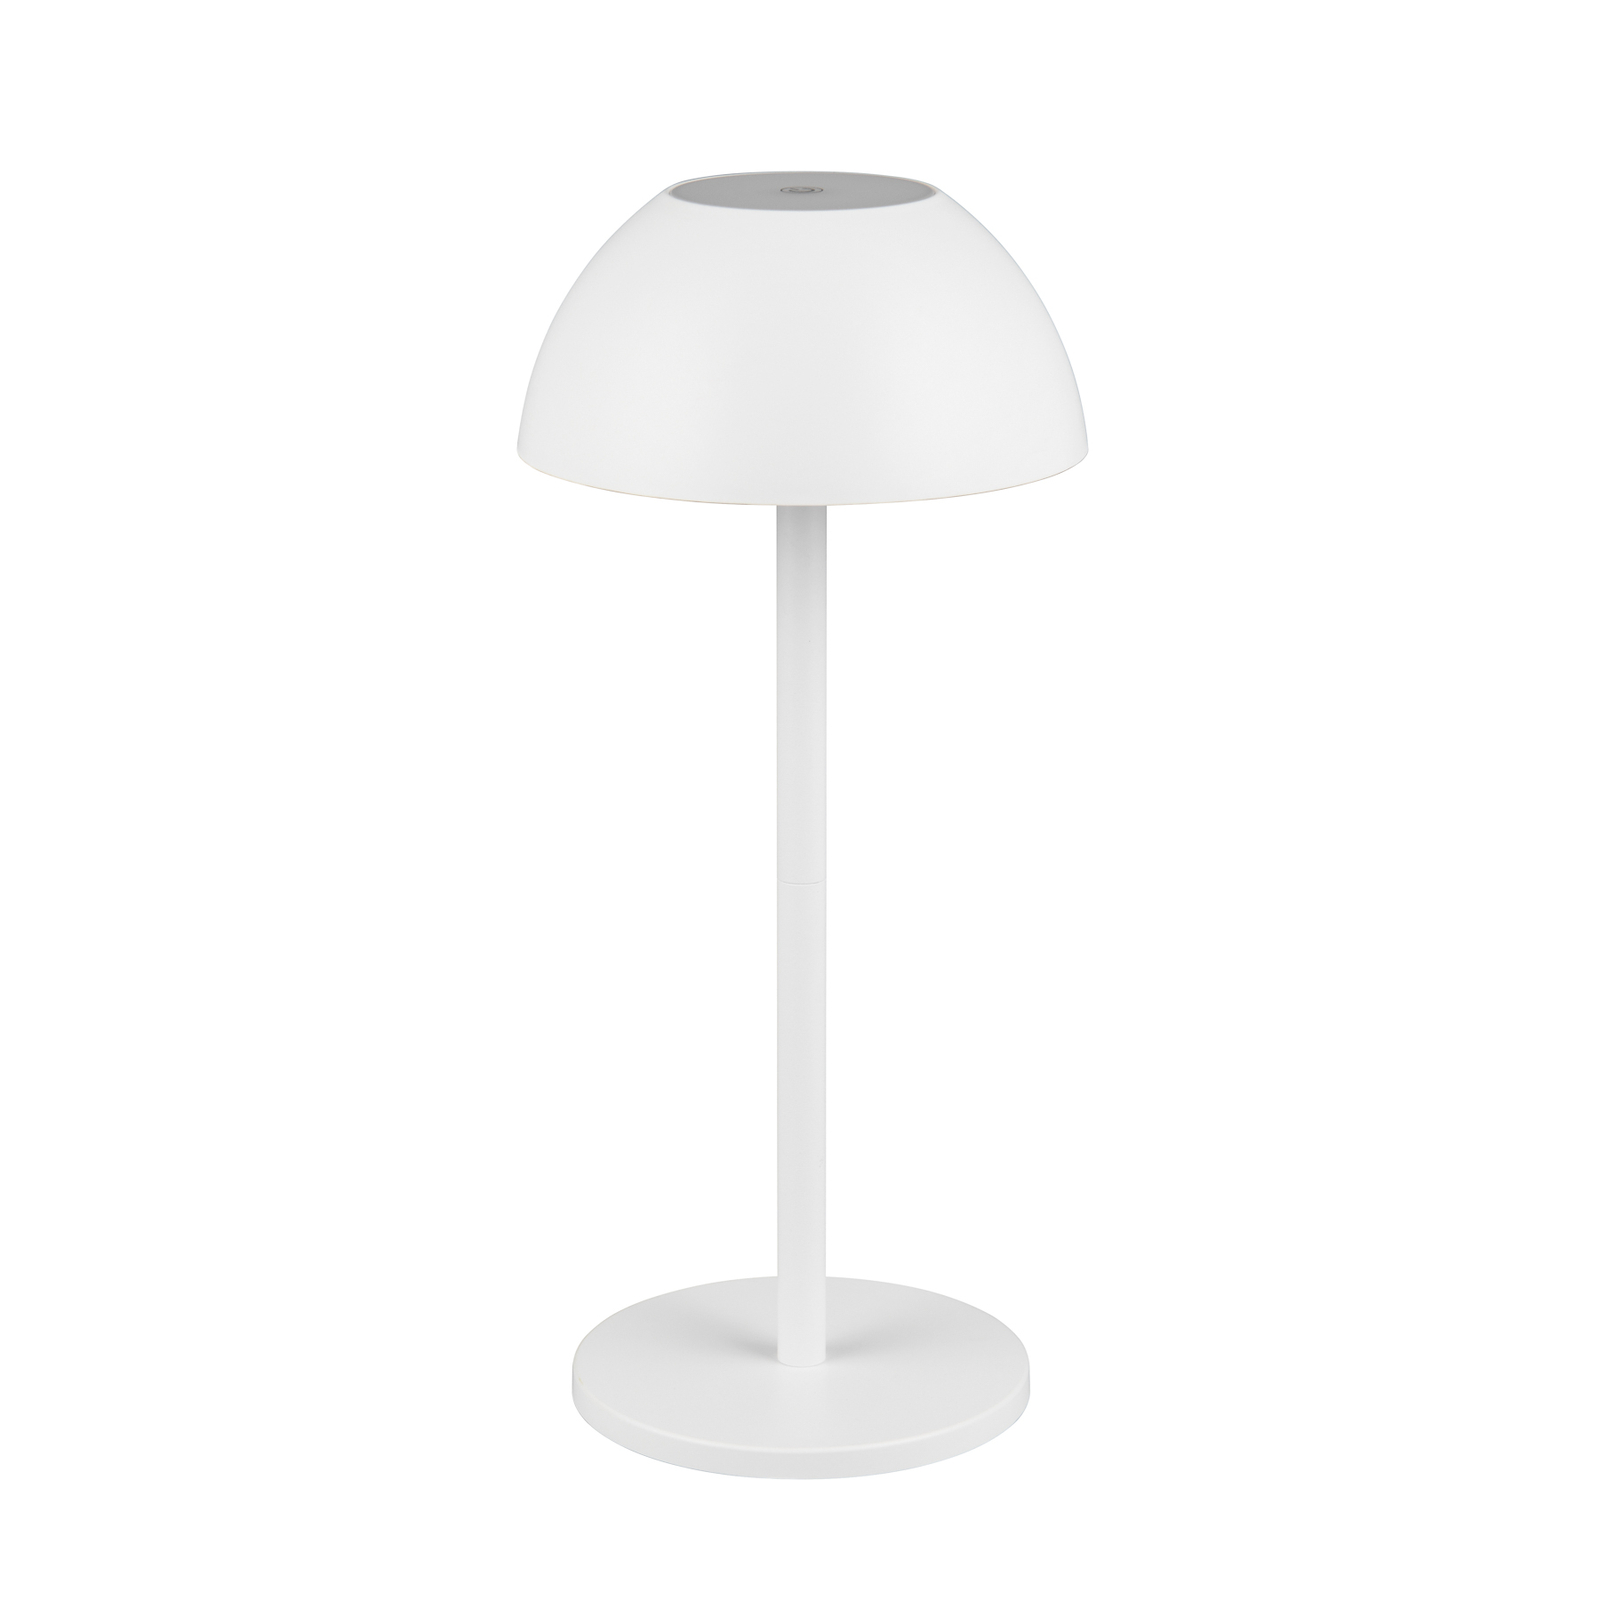 LED-Akku-Tischlampe Ricardo, weiß, Höhe 30 cm, Kunststoff